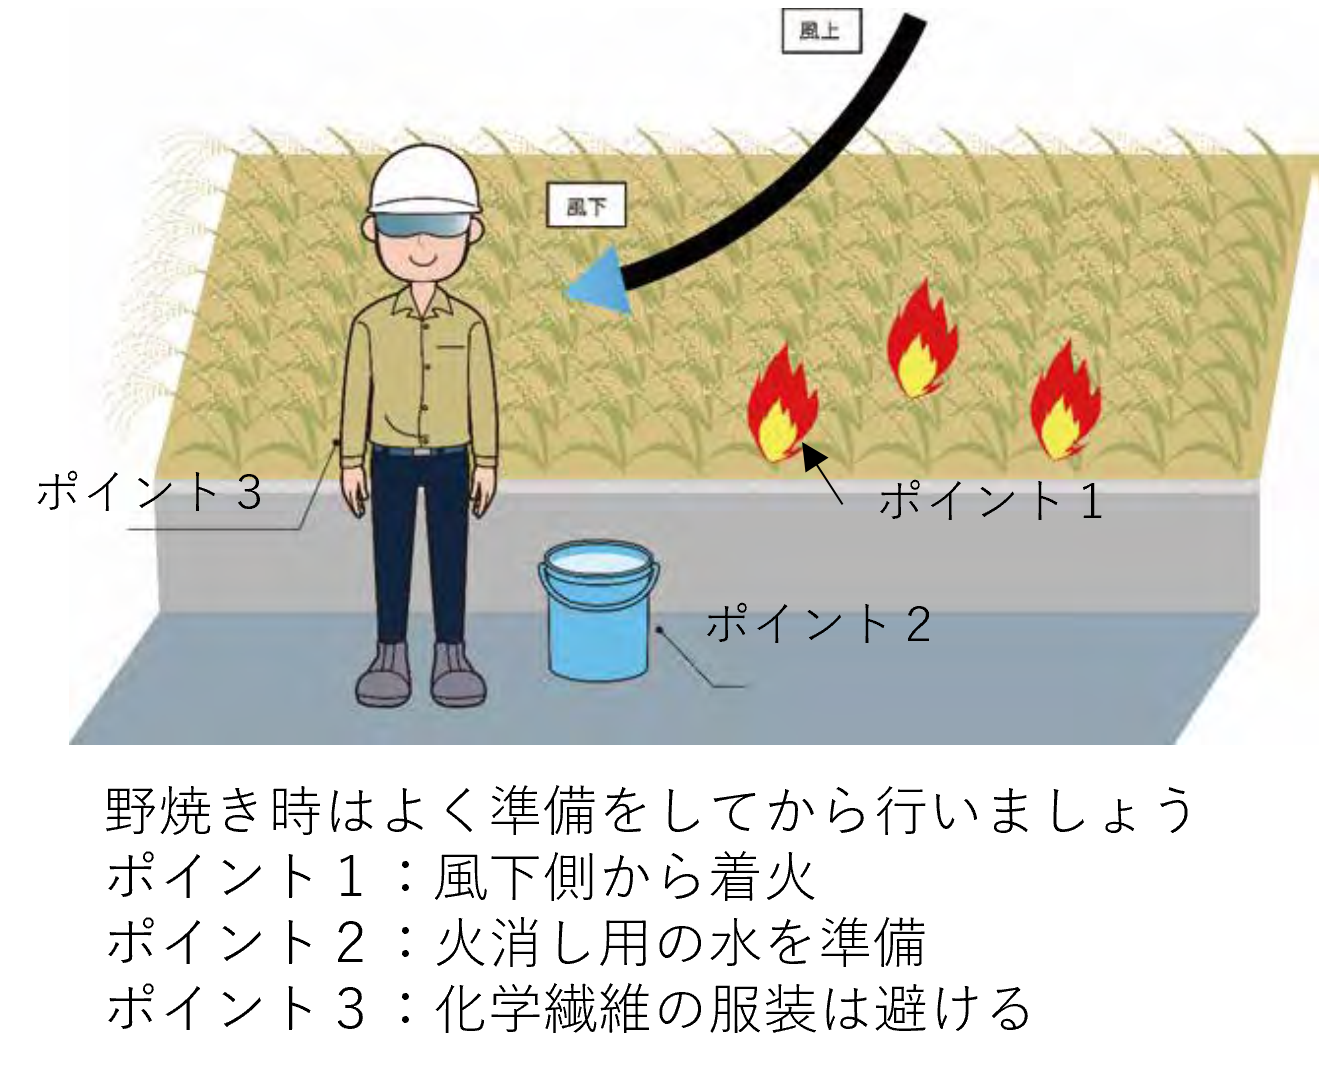 稲わら等の焼却は危険な作業です！ （２月に発生した農作業死傷事故について）